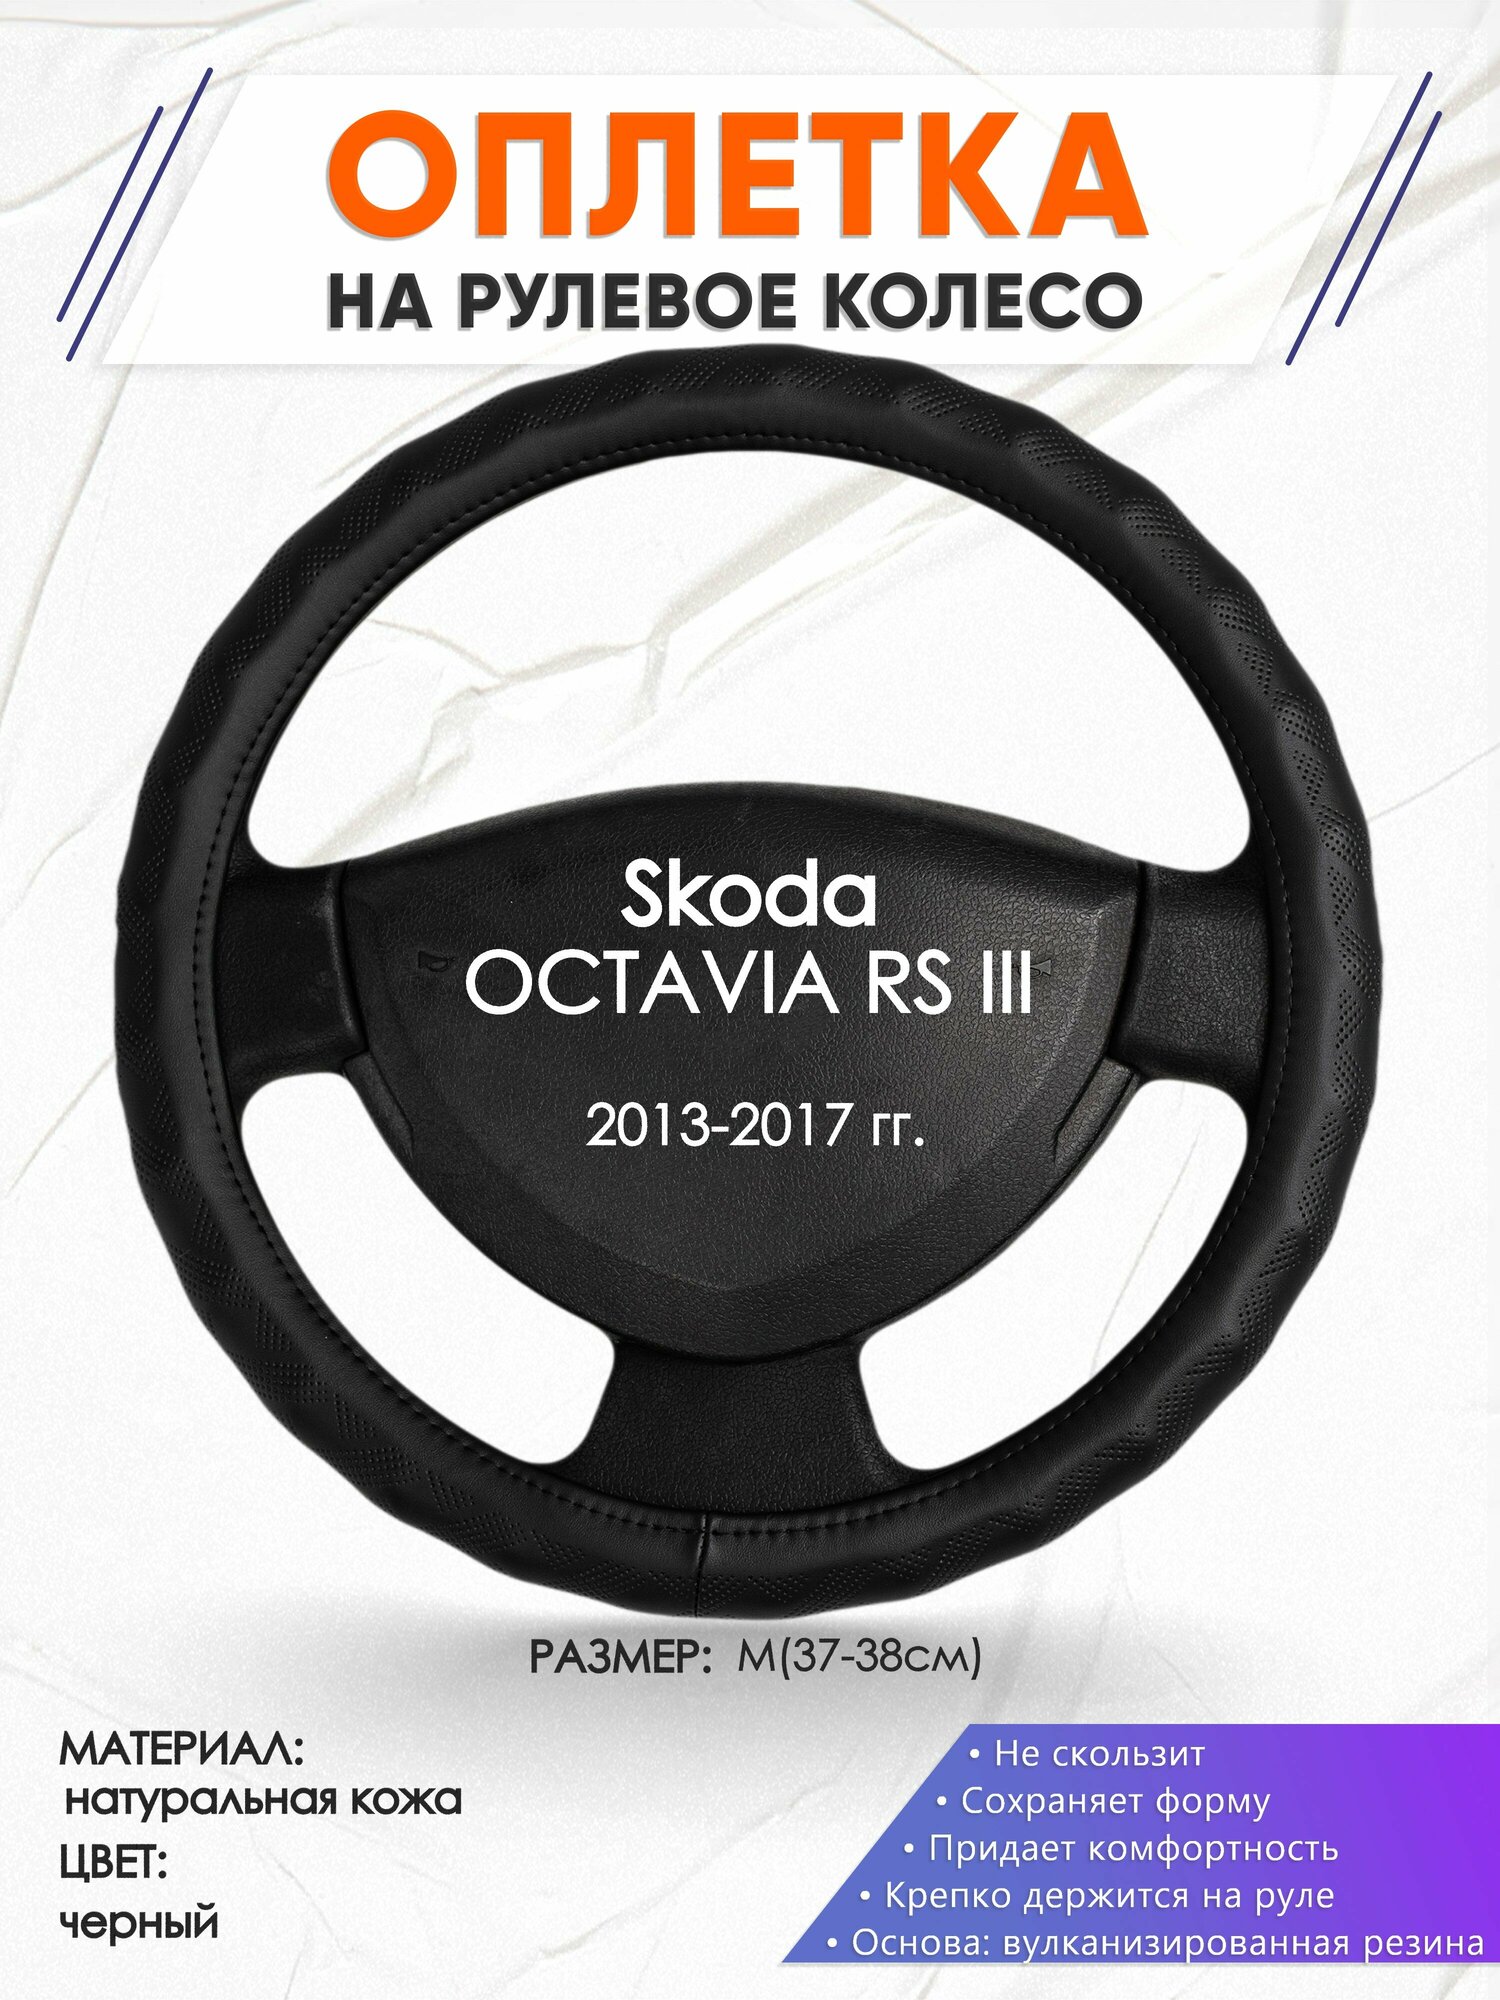 Оплетка наруль для Skoda OCTAVIA RS III(Шкода Октавия) 2013-2017 годов выпуска, размер M(37-38см), Натуральная кожа 26